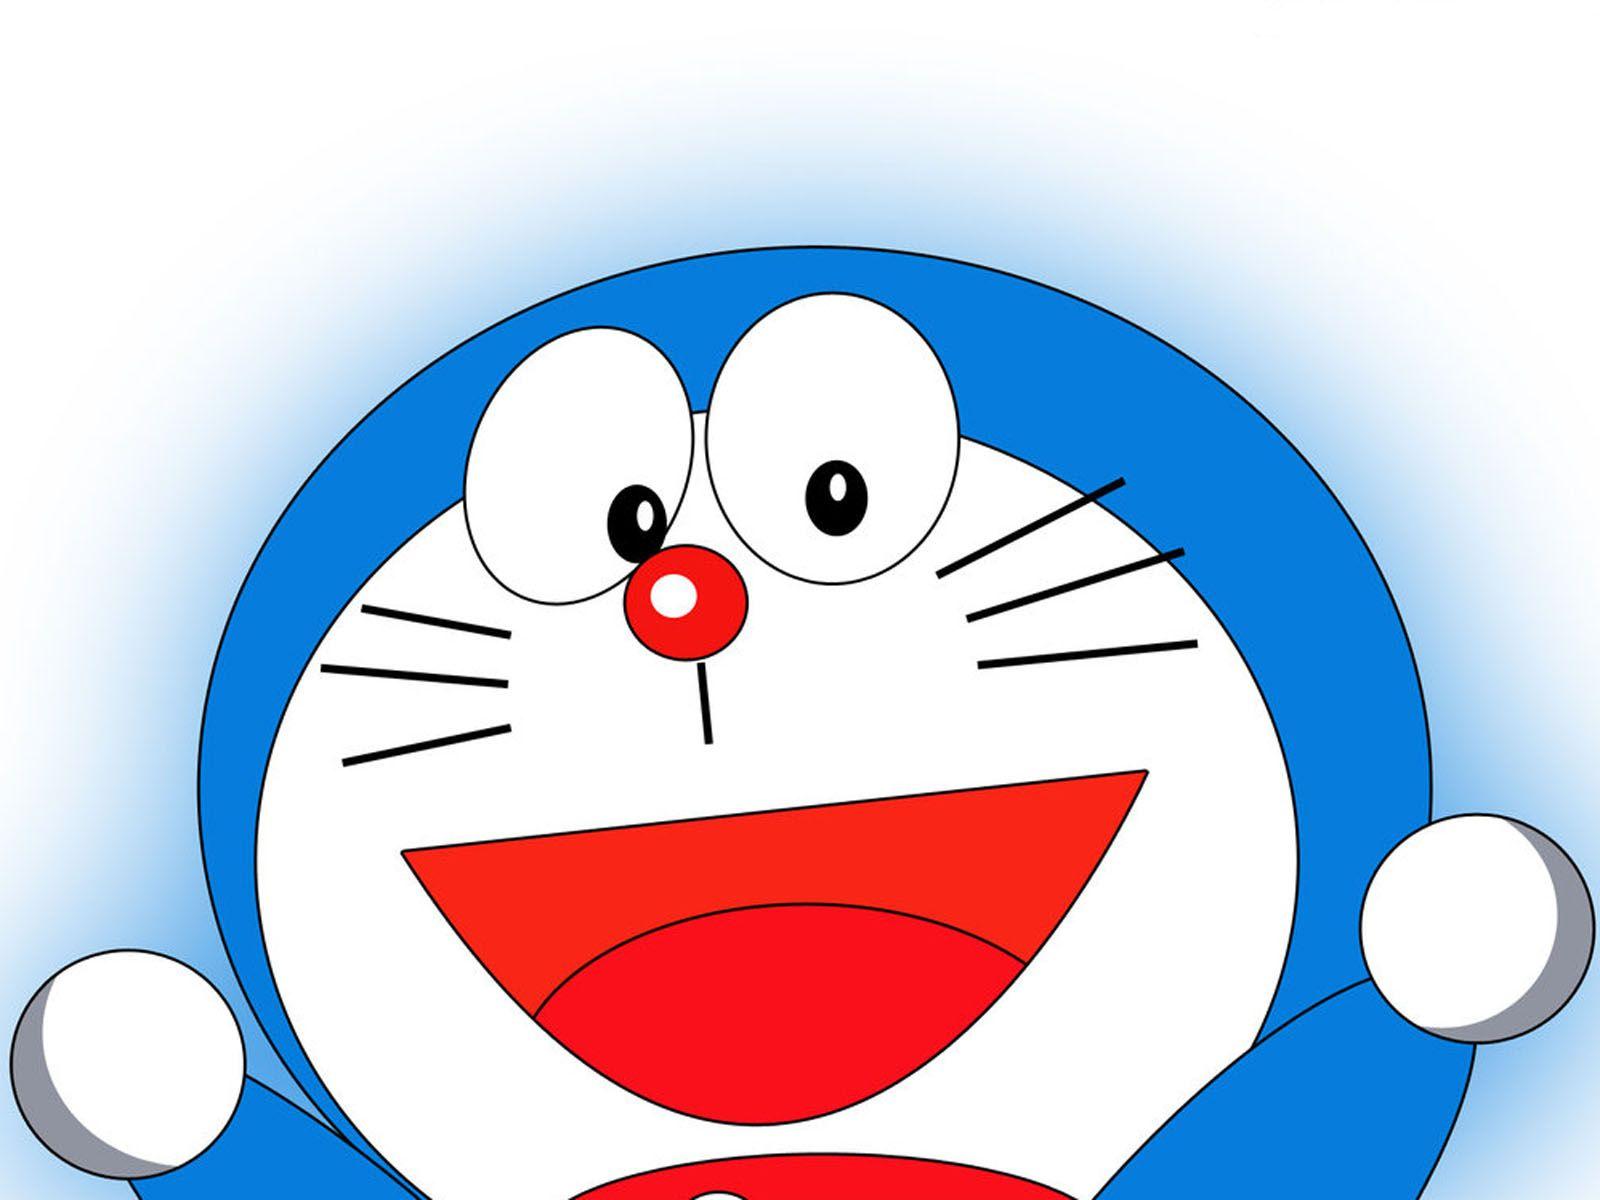 Nếu bạn đang tìm kiếm một hình nền để tạo cho màn hình desktop thêm sinh động, thì desktop wallpaper Doraemon là sự lựa chọn hoàn hảo cho bạn! Hình ảnh Doraemon với nhiều phong cách đặc trưng sẽ khiến cho màn hình của bạn thật nổi bật.